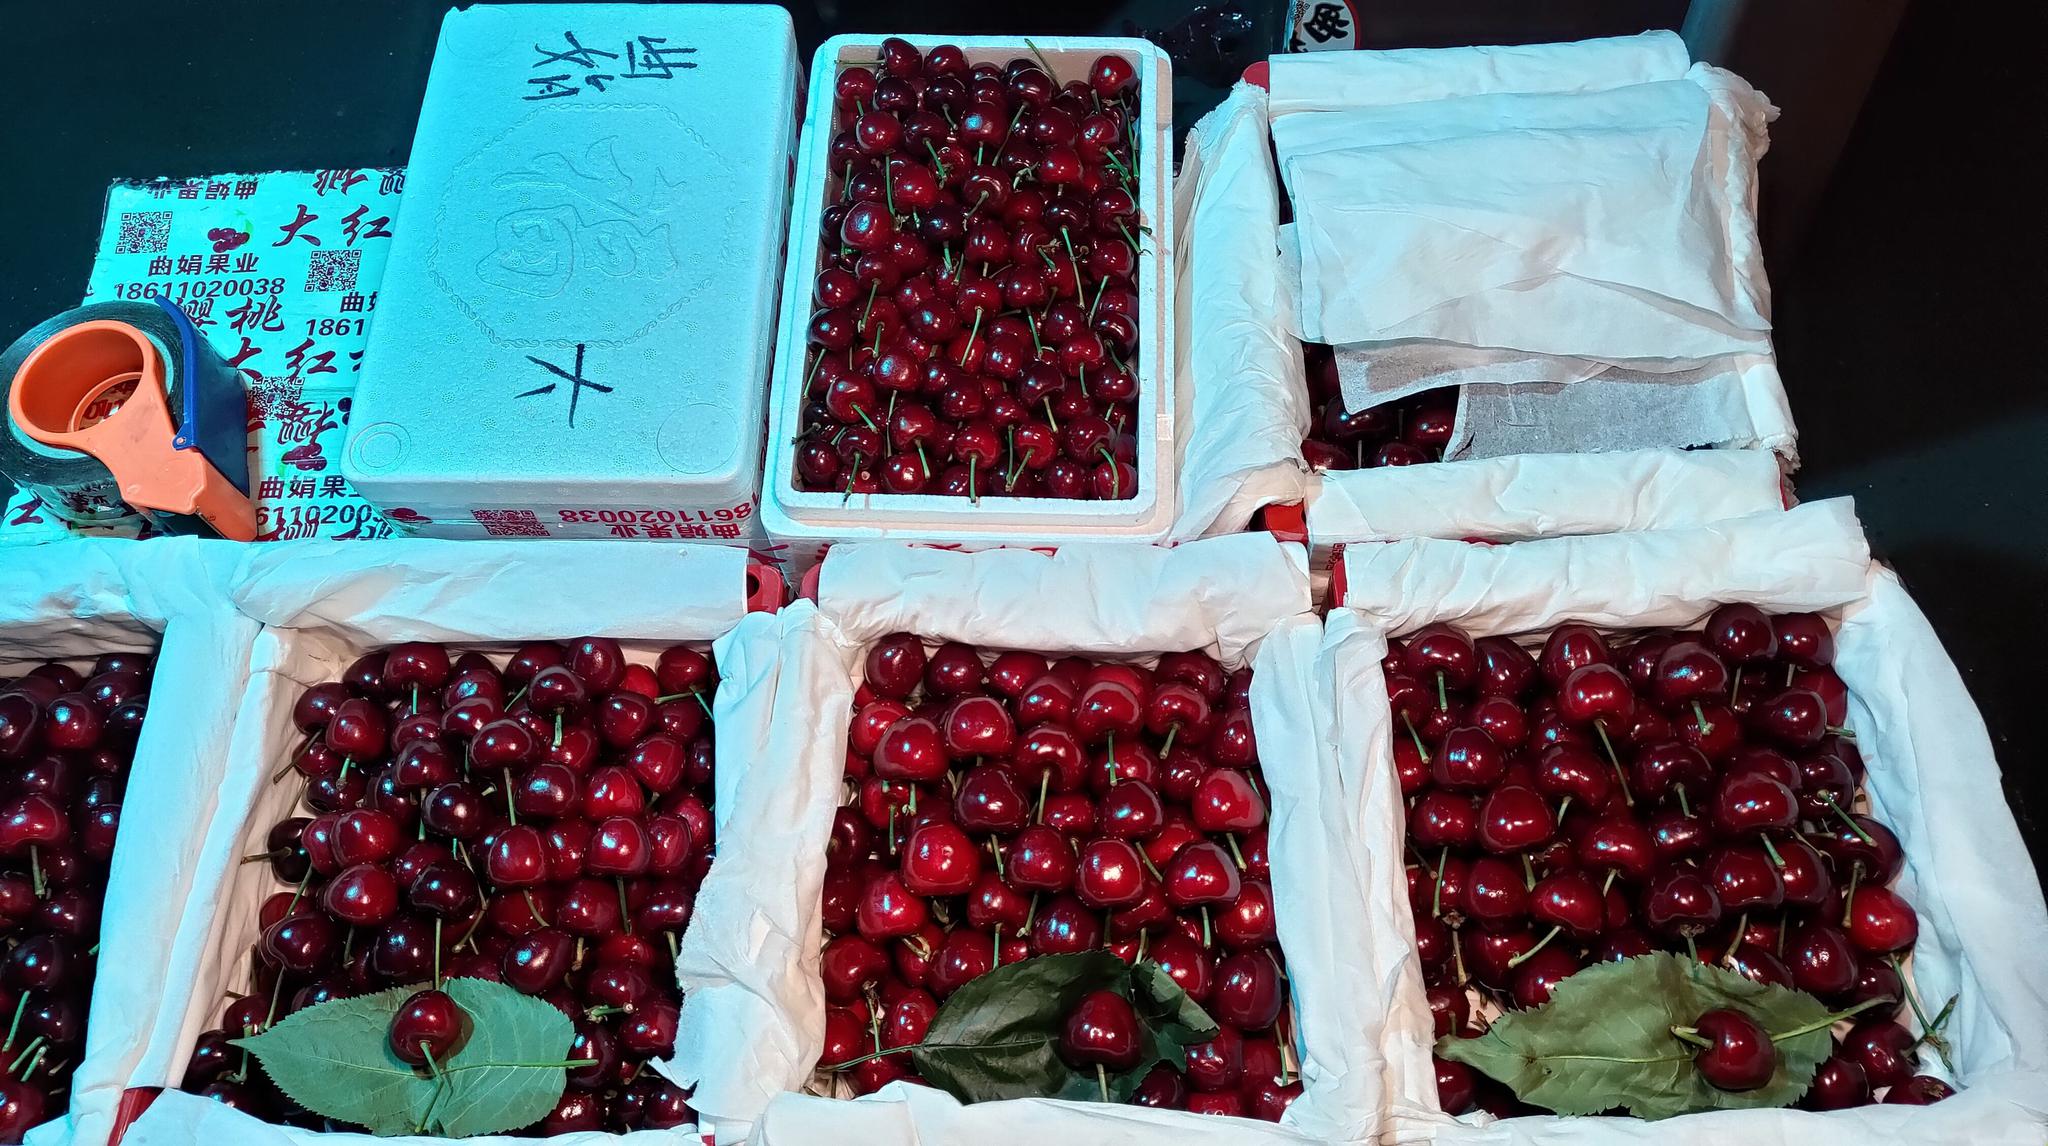 温棚生长的反季节国产大樱桃已经陆续上市。受访者供图